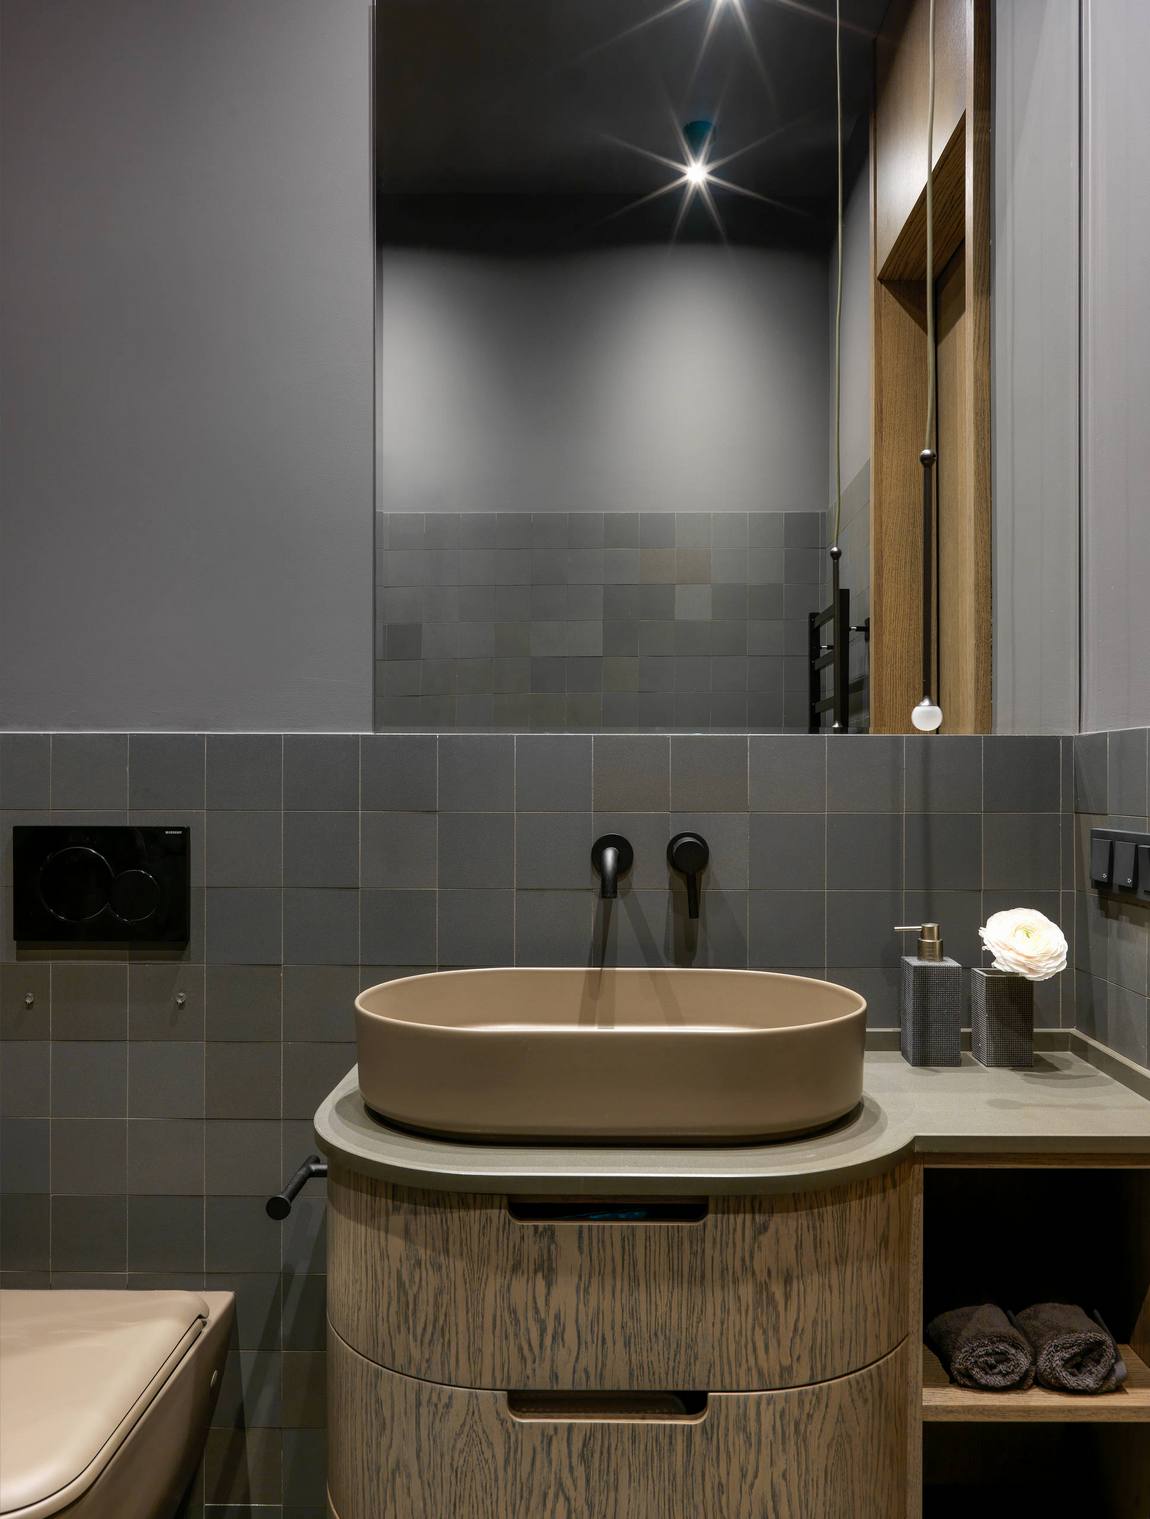 Phòng tắm có thiết kế kiểu cổ điển với tủ lưu trữ kết hợp bồn rửa gam màu nâu và kiểu ngăn kéo truyền thống. Bên trên là tấm gương cỡ lớn giúp phản chiếu ánh sáng từ đèn trần cho căn phòng thoáng sáng hơn.